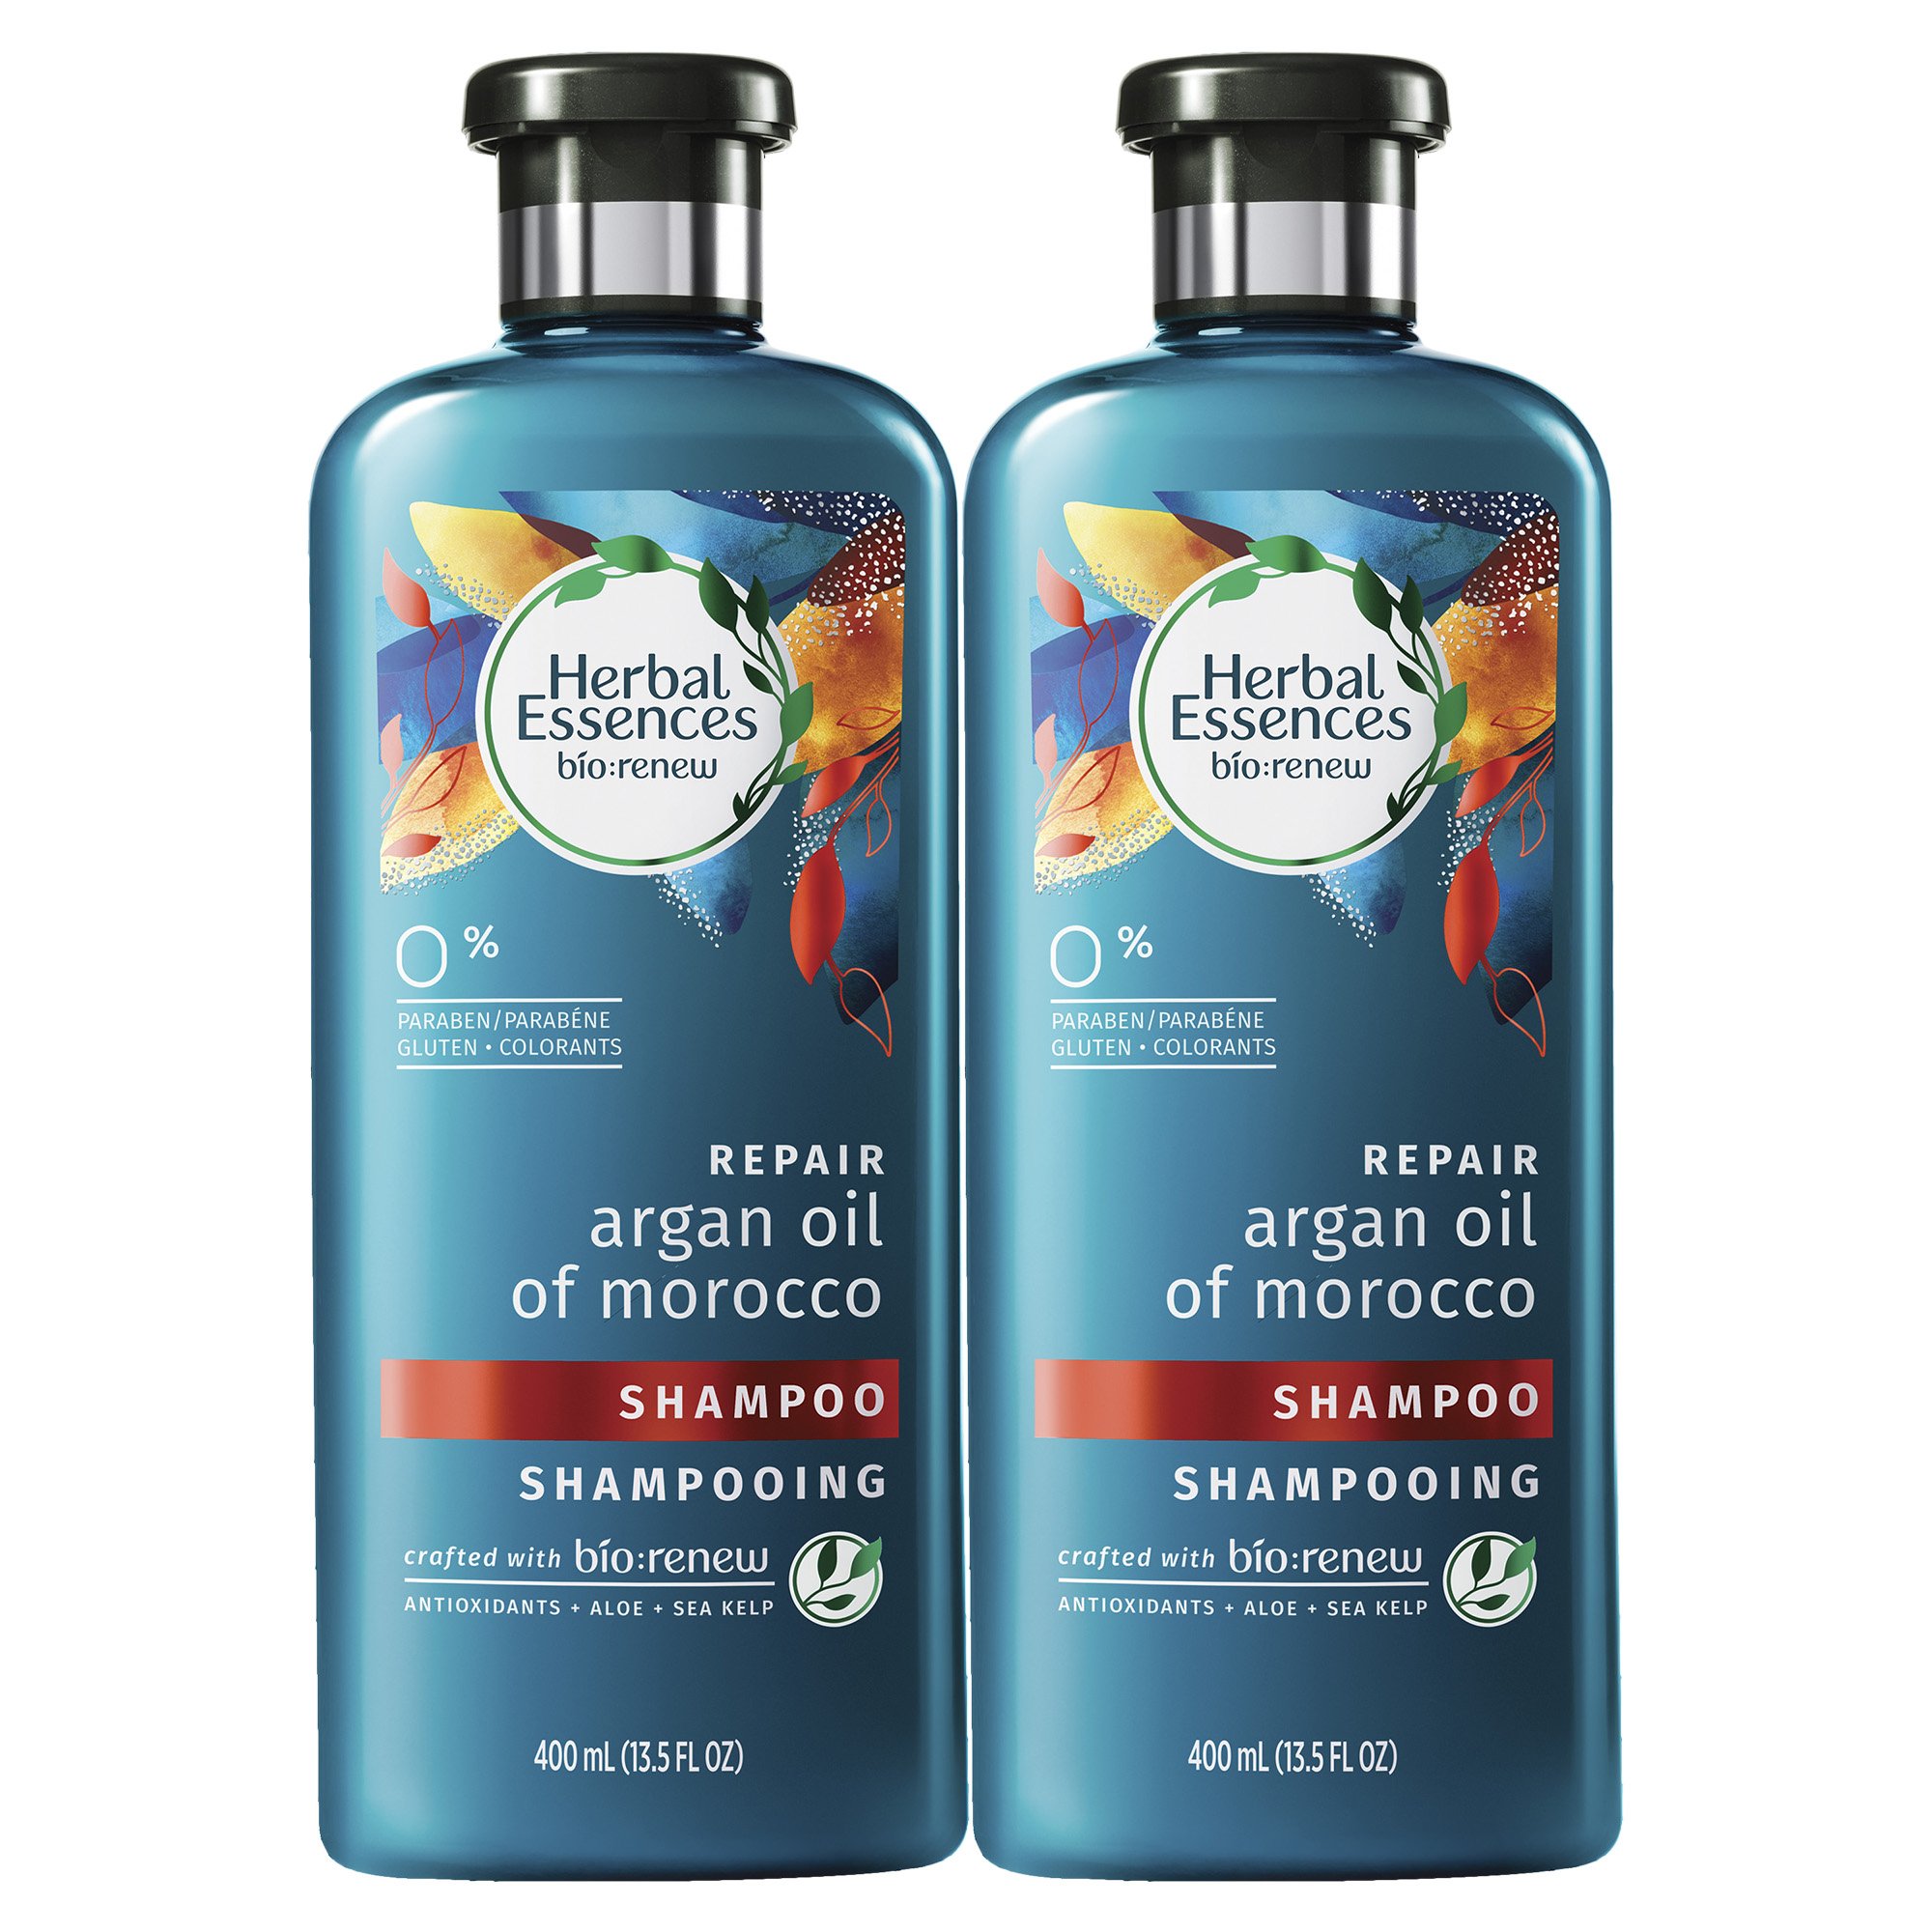 szampon herbal essences argan oil opinie